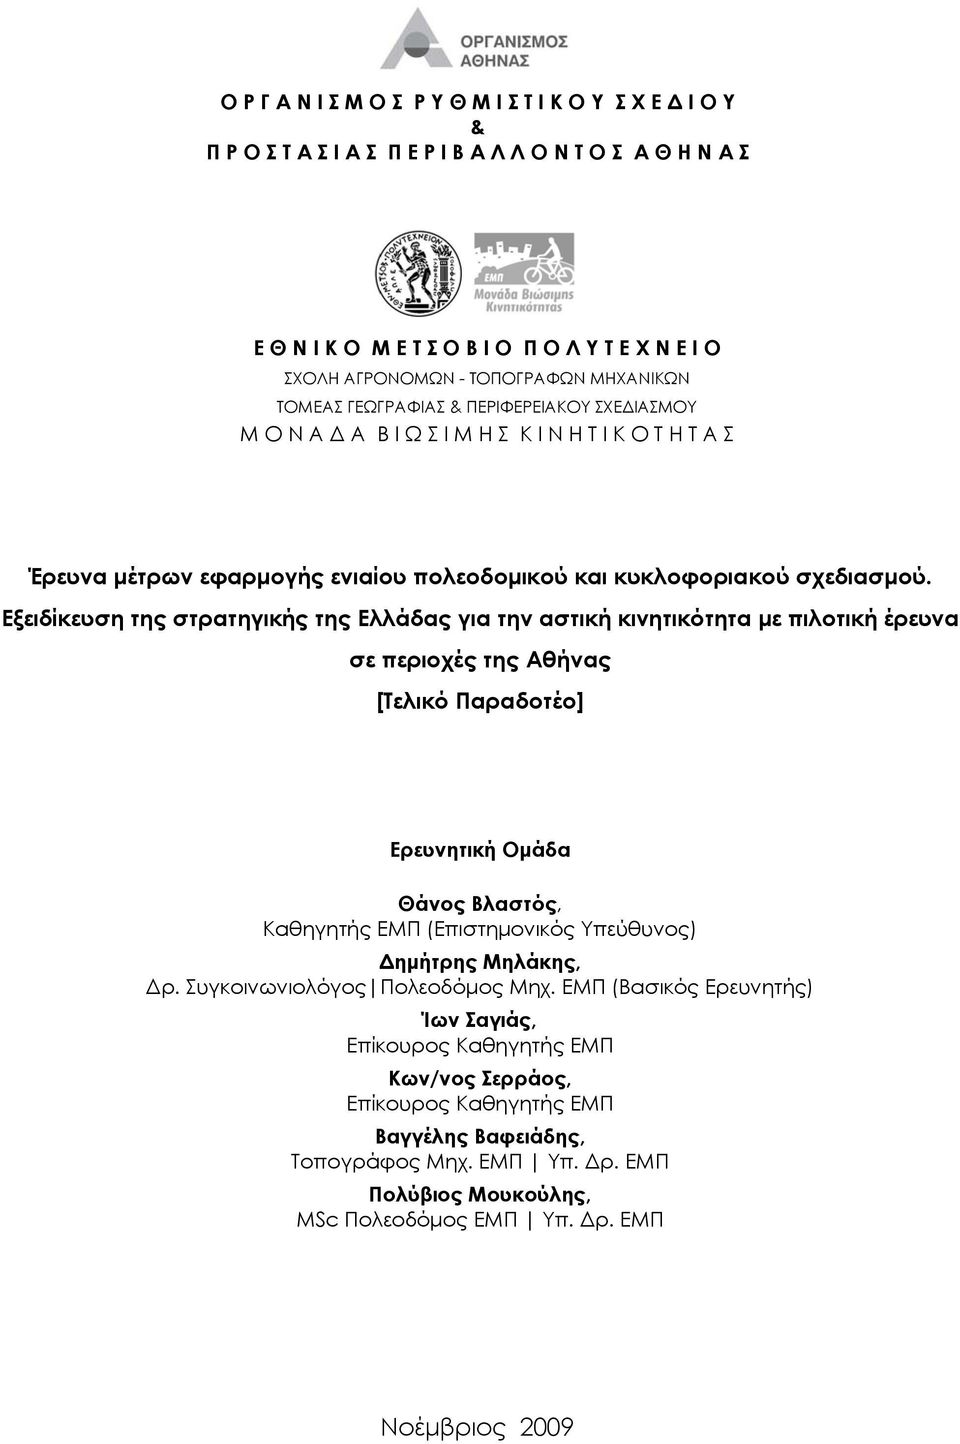 Εξειδίκευση της στρατηγικής της Ελλάδας για την αστική κινητικότητα με πιλοτική έρευνα σε περιοχές της Αθήνας [Τελικό Παραδοτέο] Ερευνητική Ομάδα Θάνος Βλαστός, Καθηγητής ΕΜΠ (Επιστημονικός